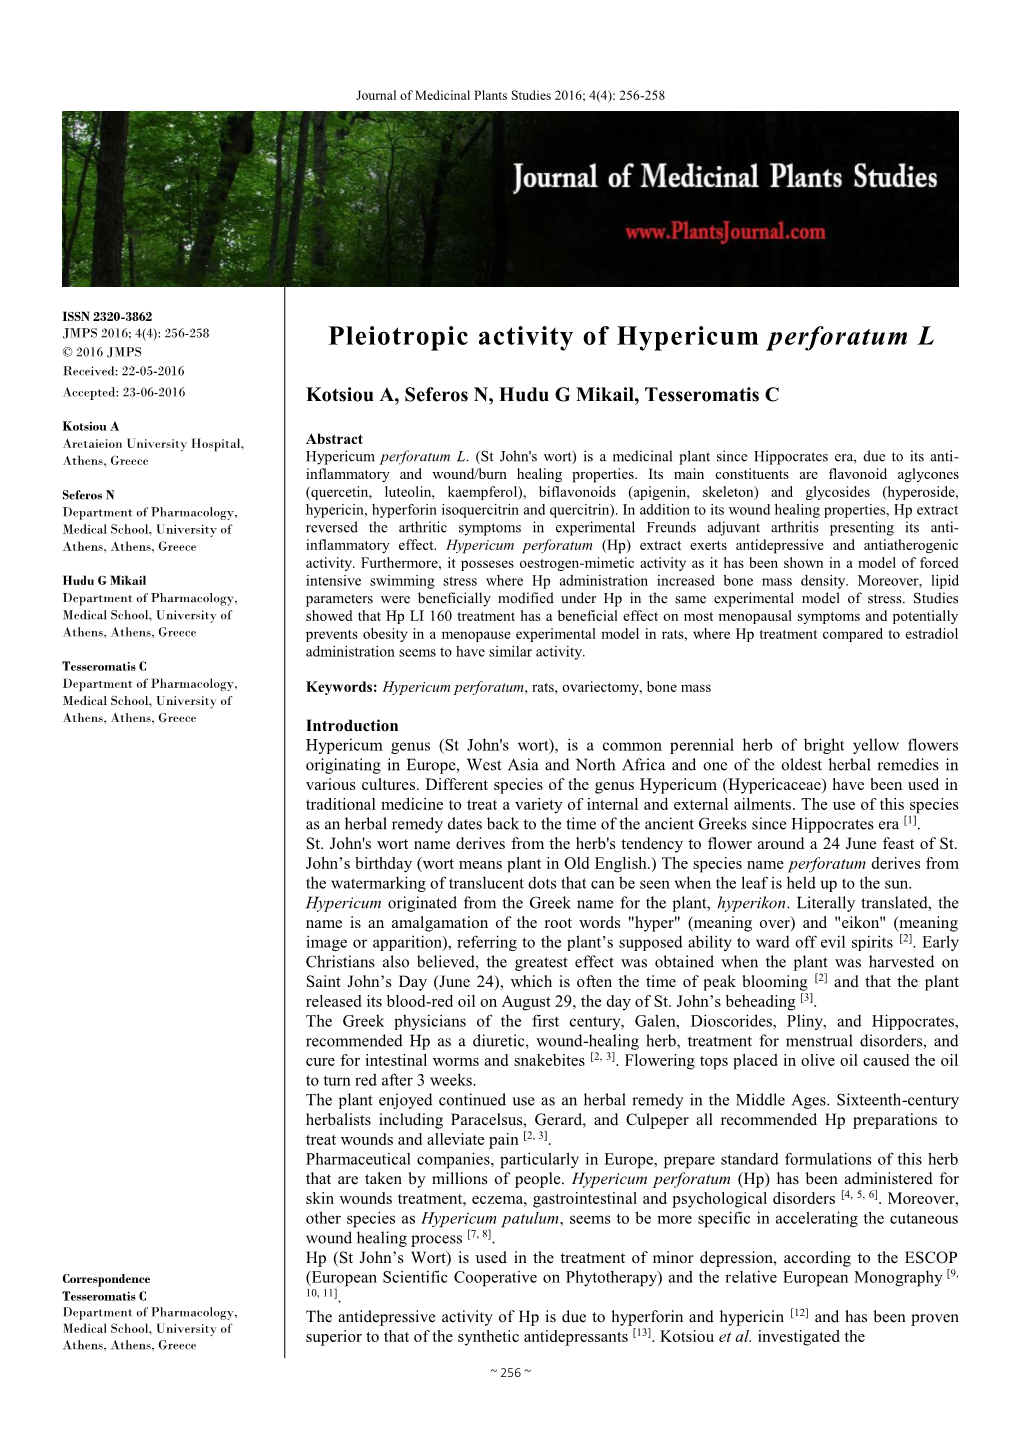 Pleiotropic Activity of Hypericum Perforatum L © 2016 JMPS Received: 22-05-2016